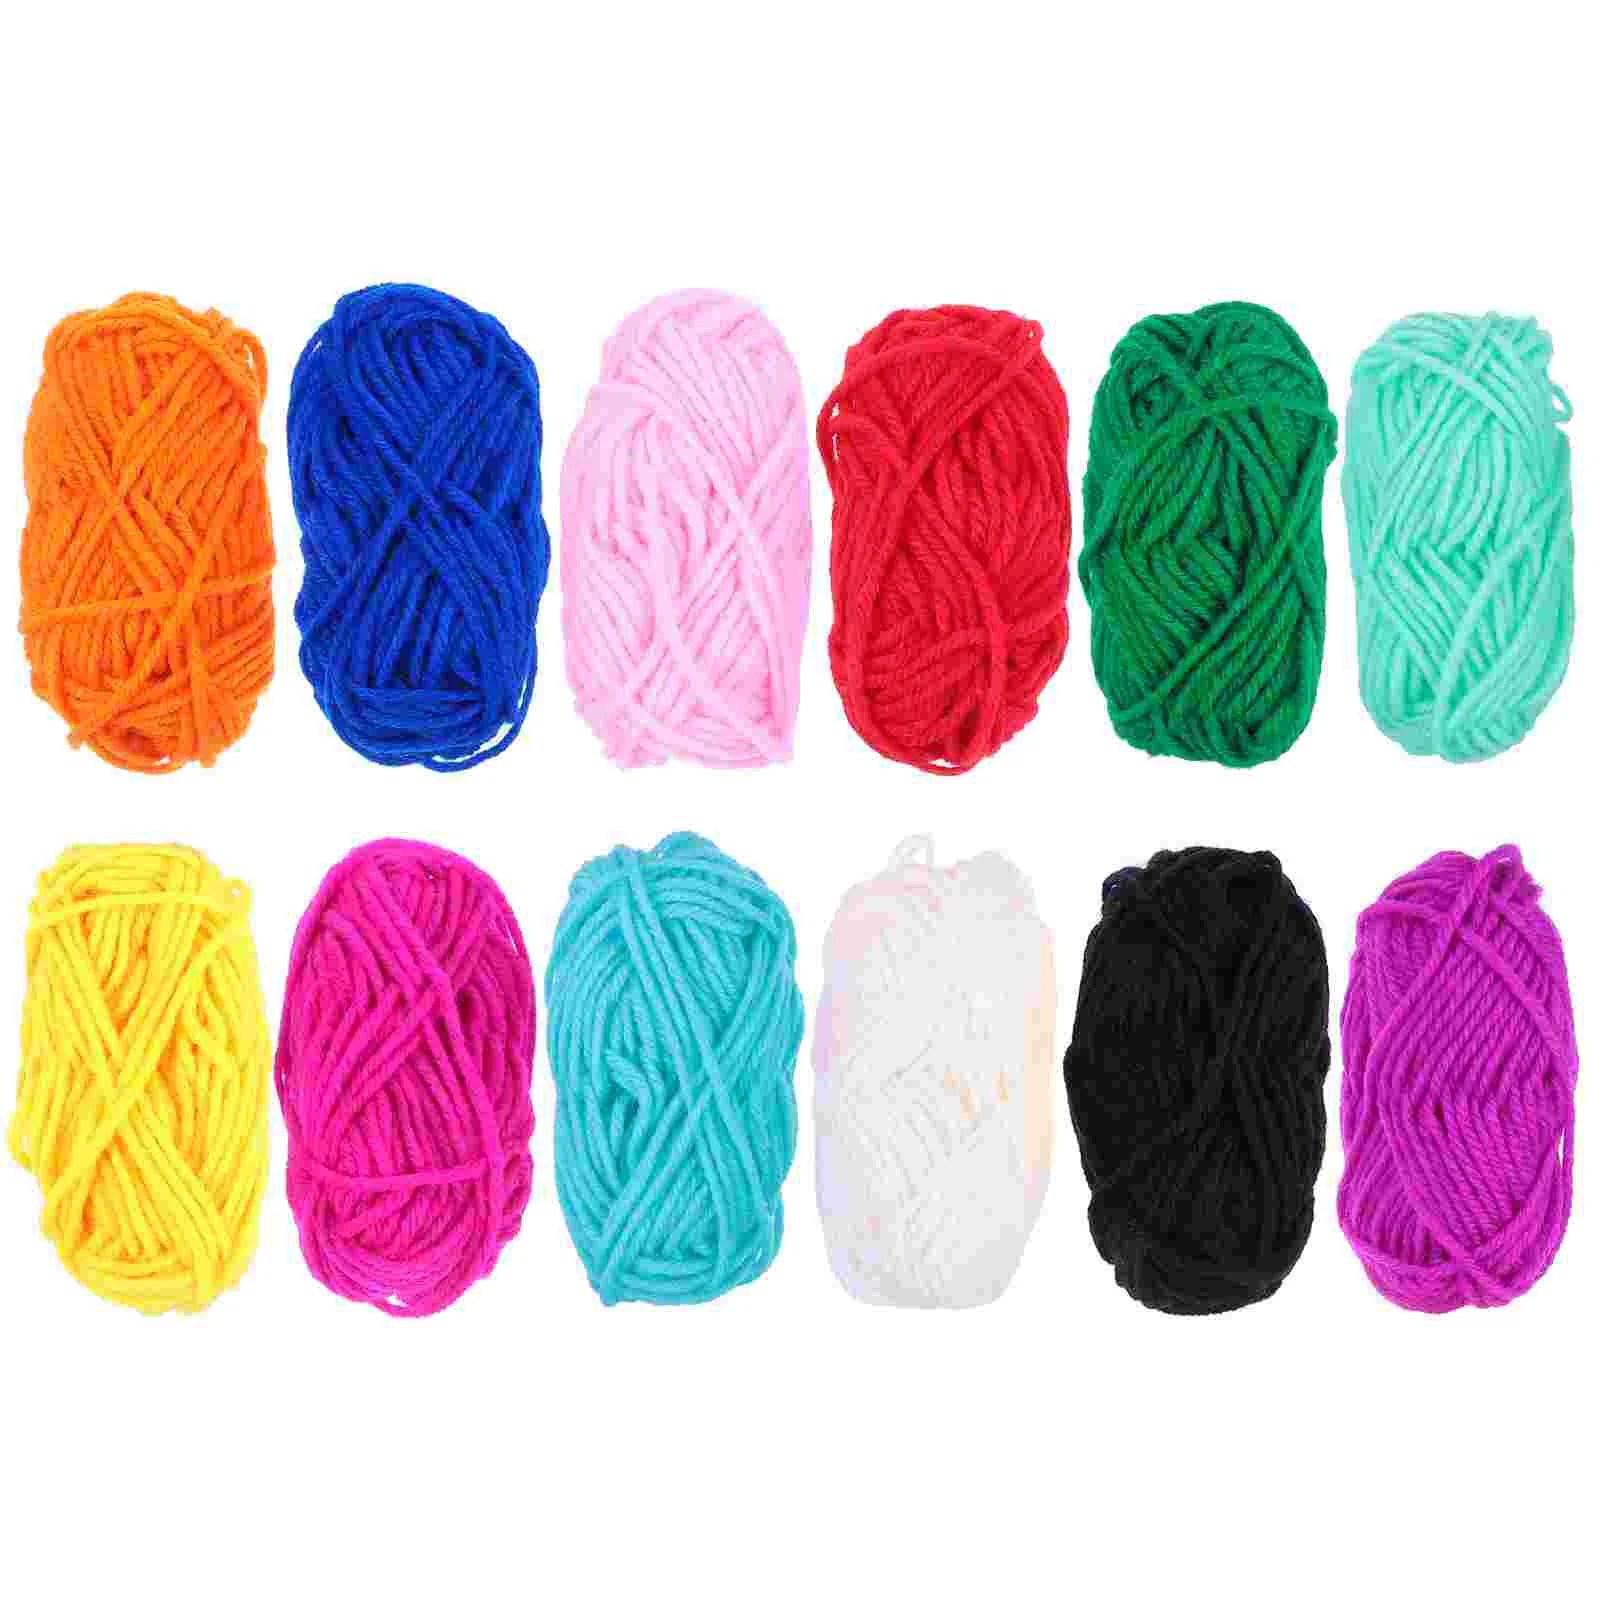 

Yarn Crochet Knitting Cotton Wool Acrylic Thread Mini Skeins Sweater Bulky Weaving Sock Kit Blanket Starter Blend Making Bulk